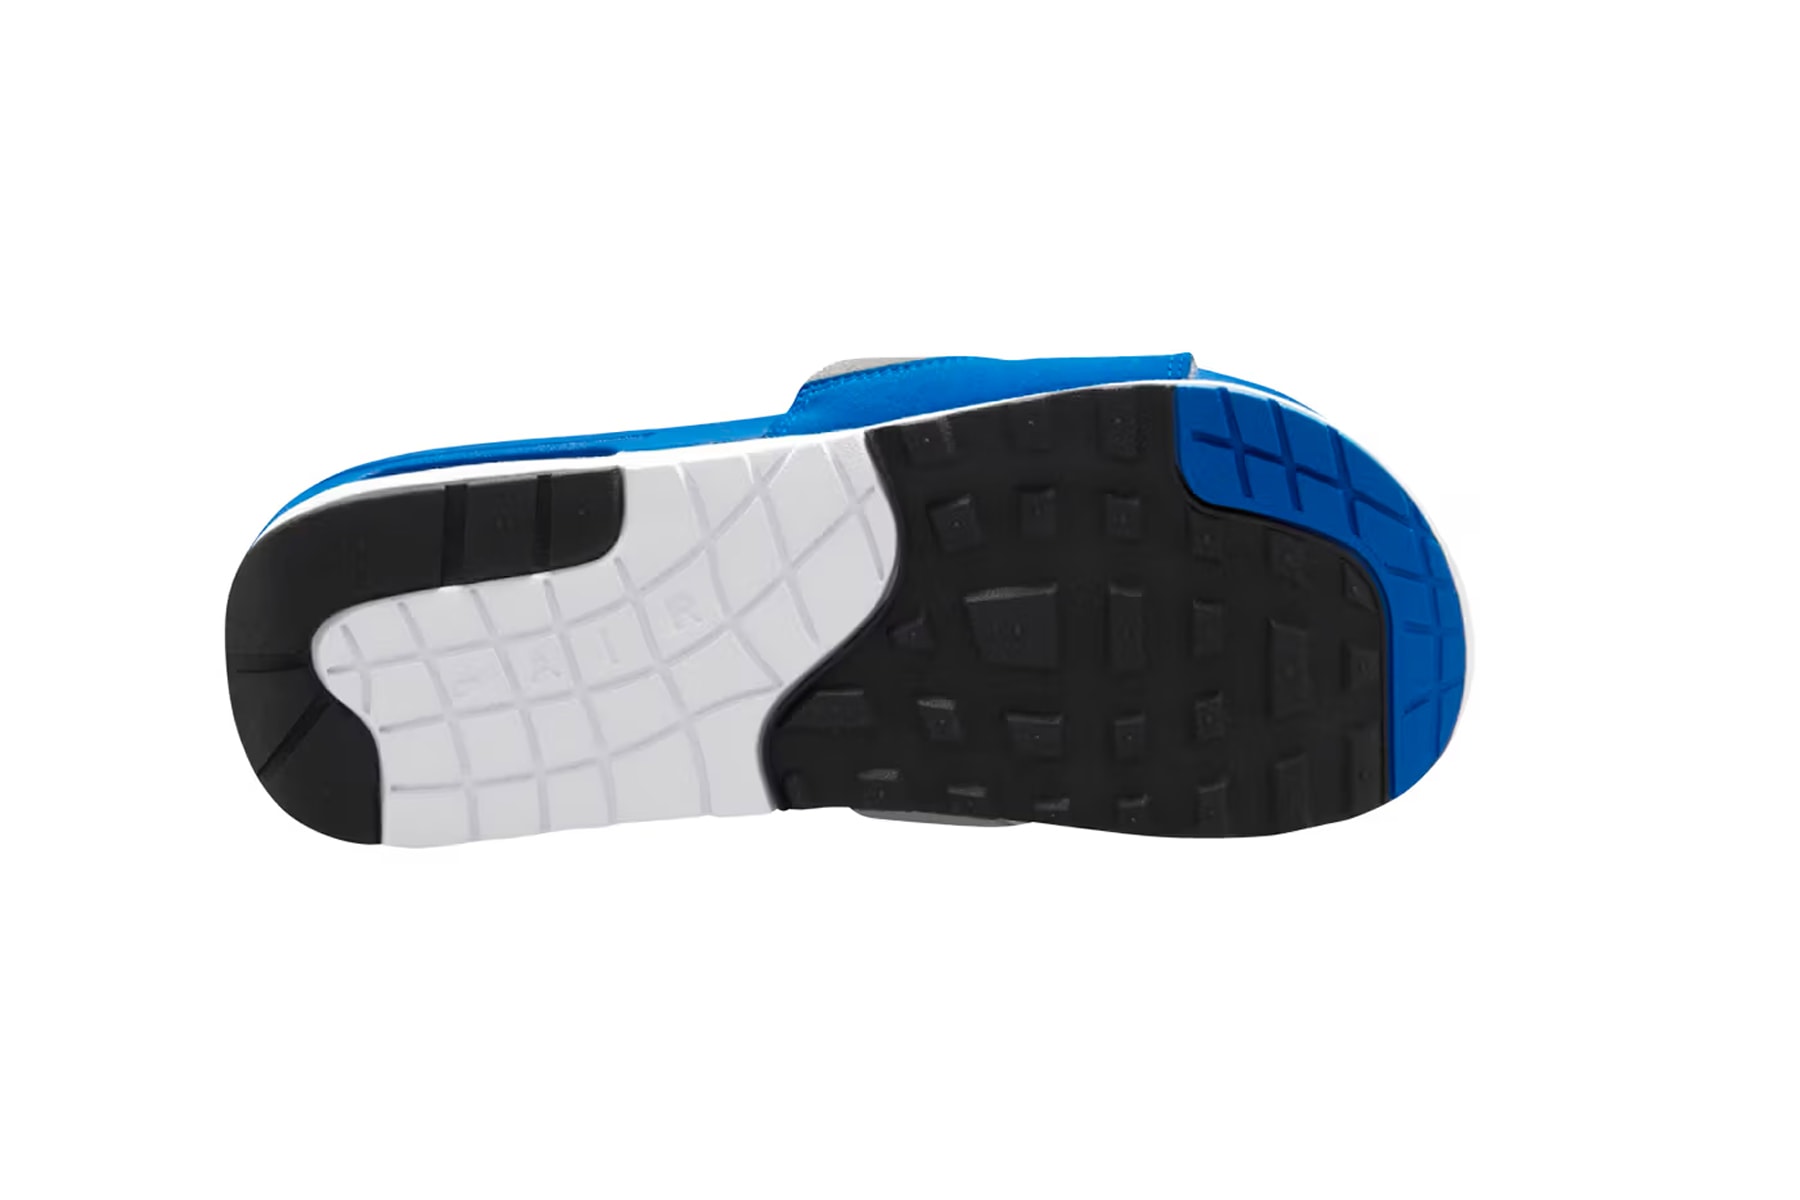 Nike Air Max 1 Slide 變體拖鞋全新配色「Royal」正式登場